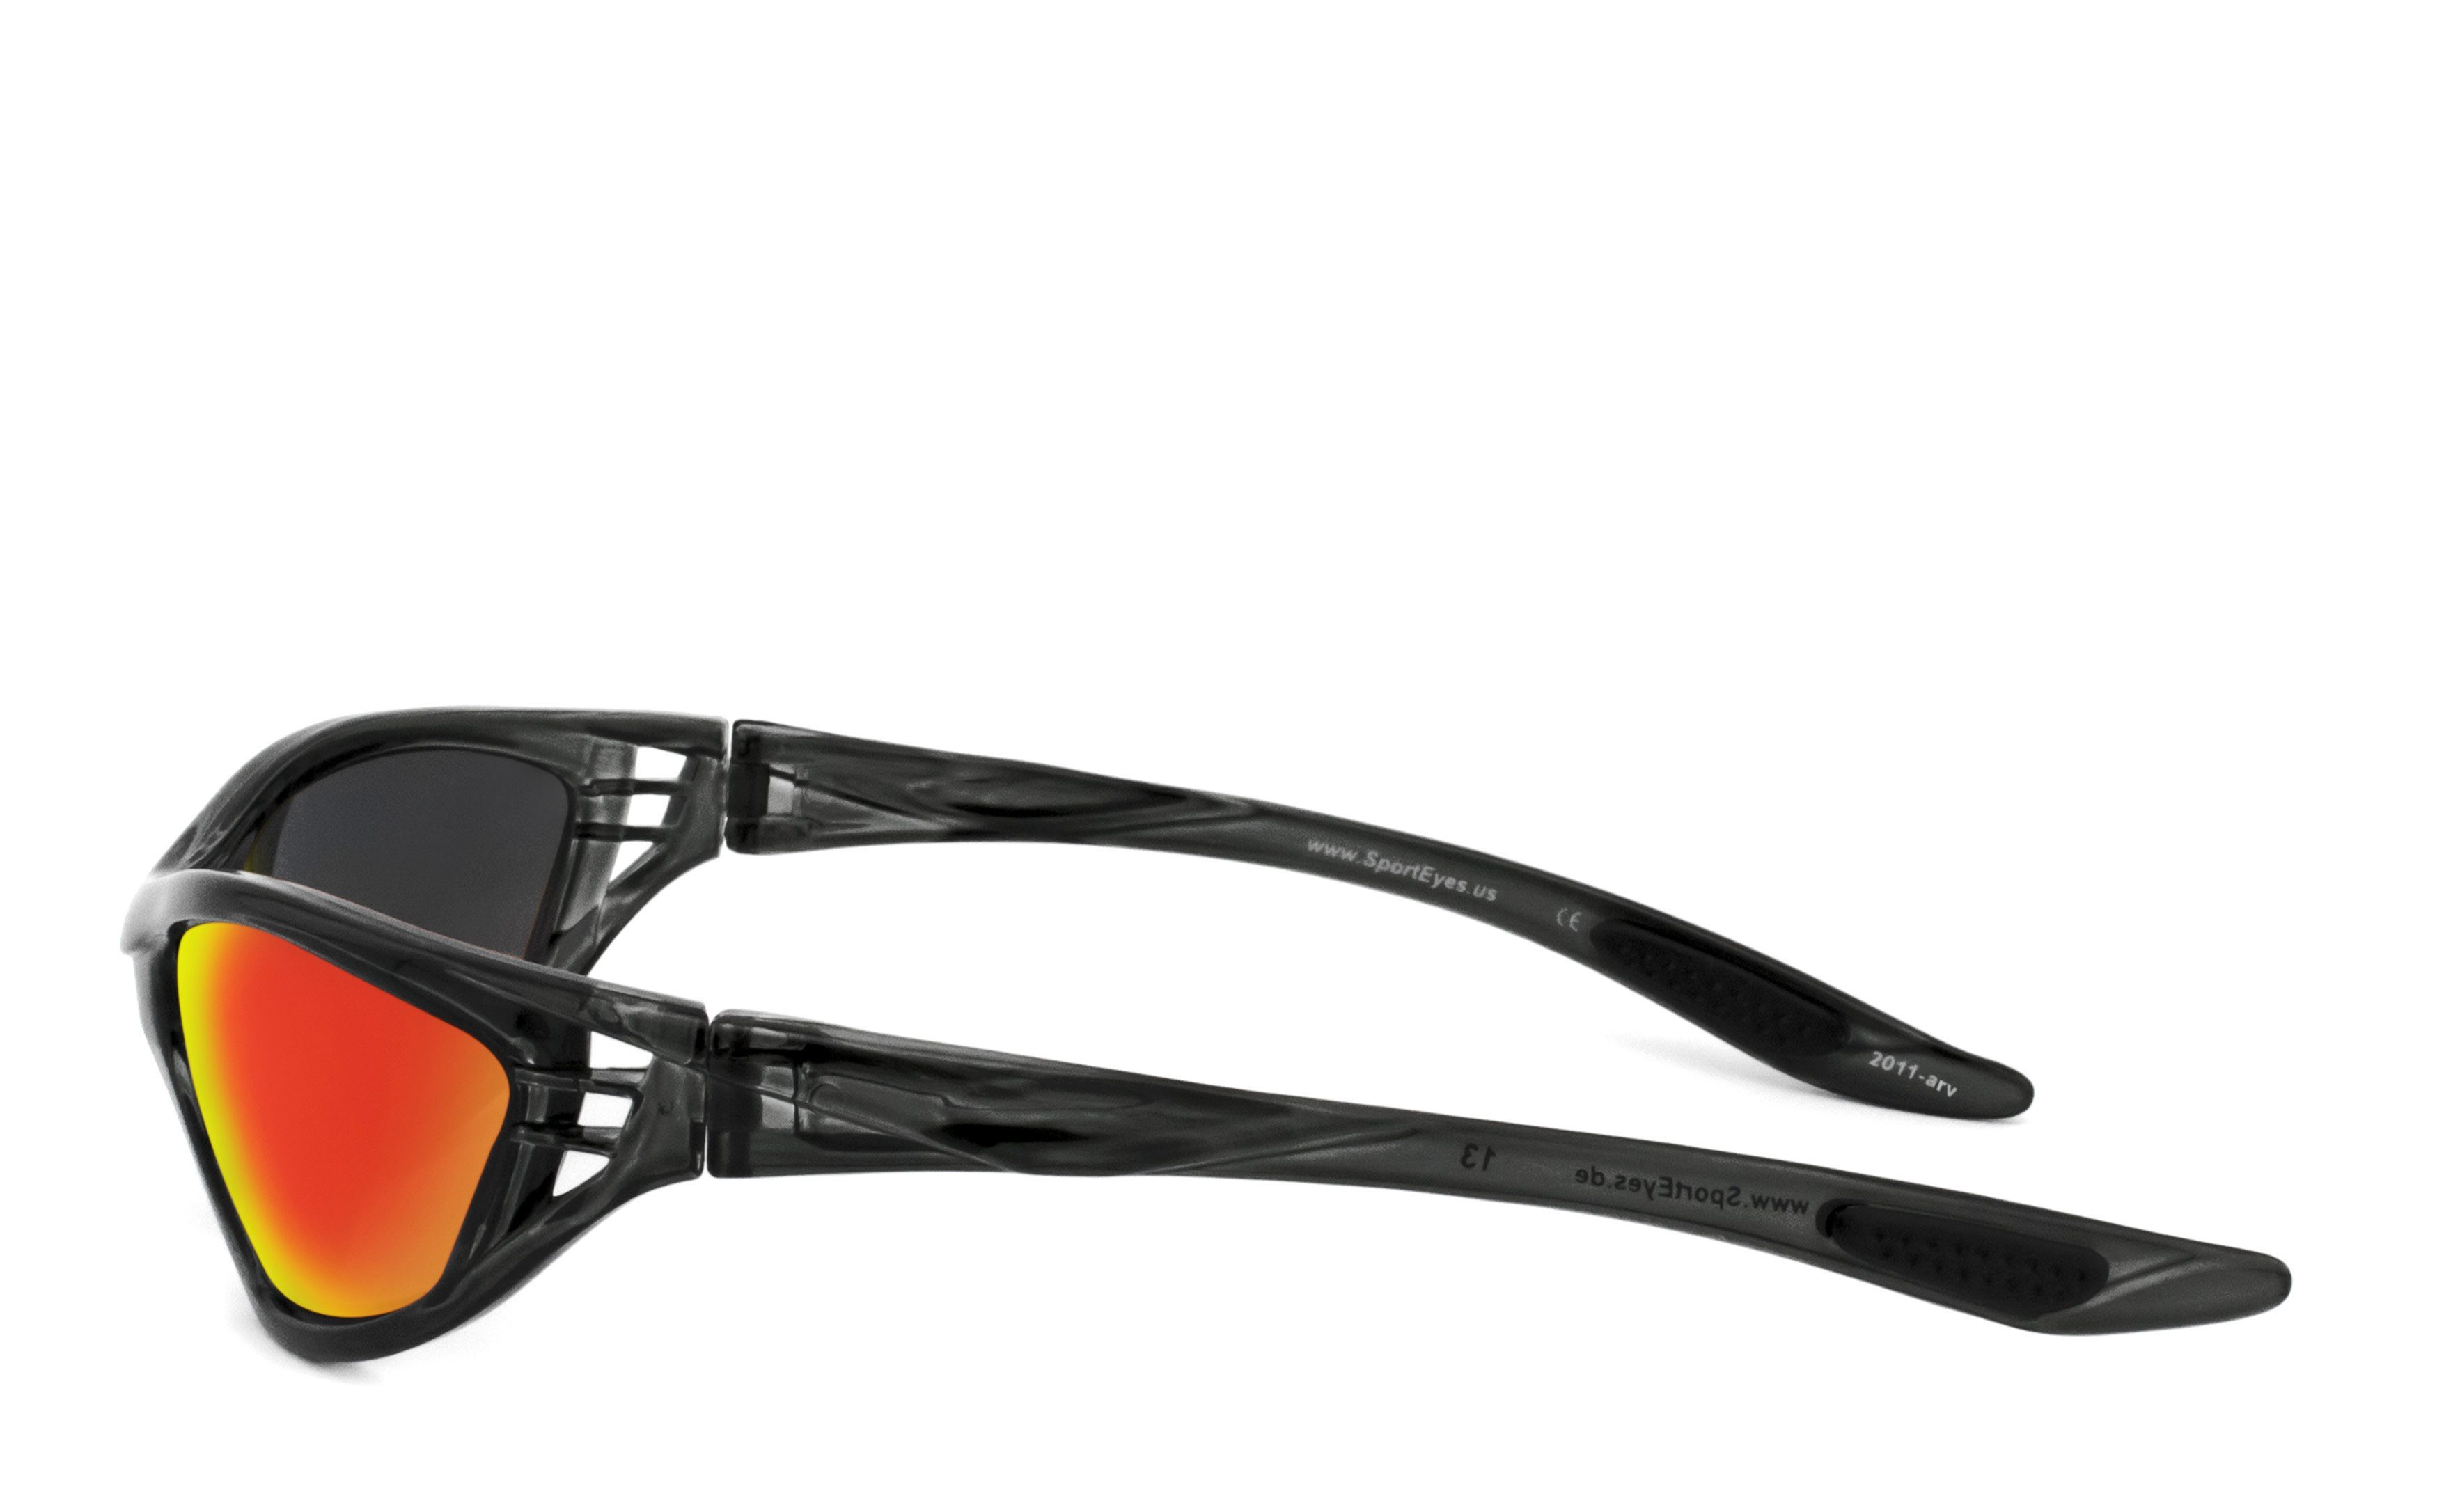 SportEyes HSE Sportbrille 2, - Kunststoff-Sicherheitsglas SPEED MASTER durch Steinschlagbeständig